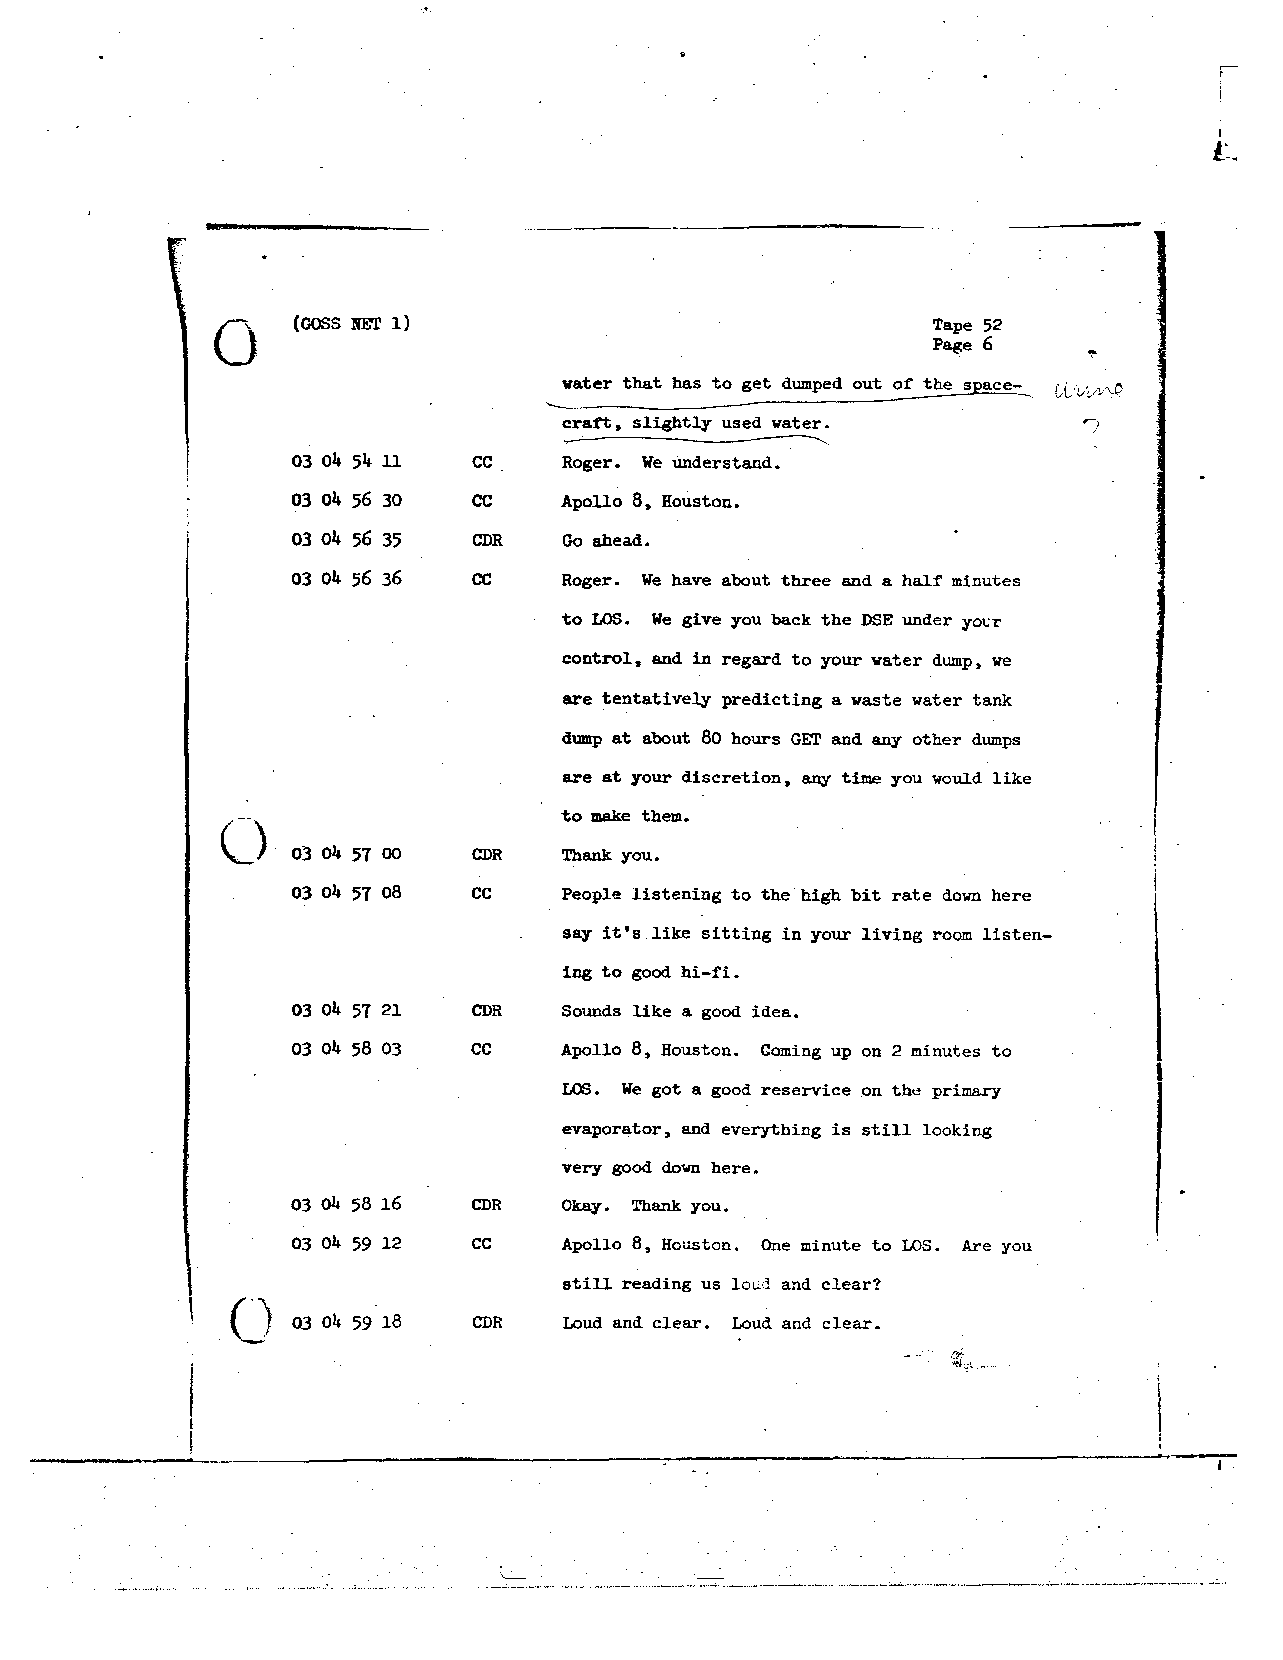 Page 414 of Apollo 8’s original transcript